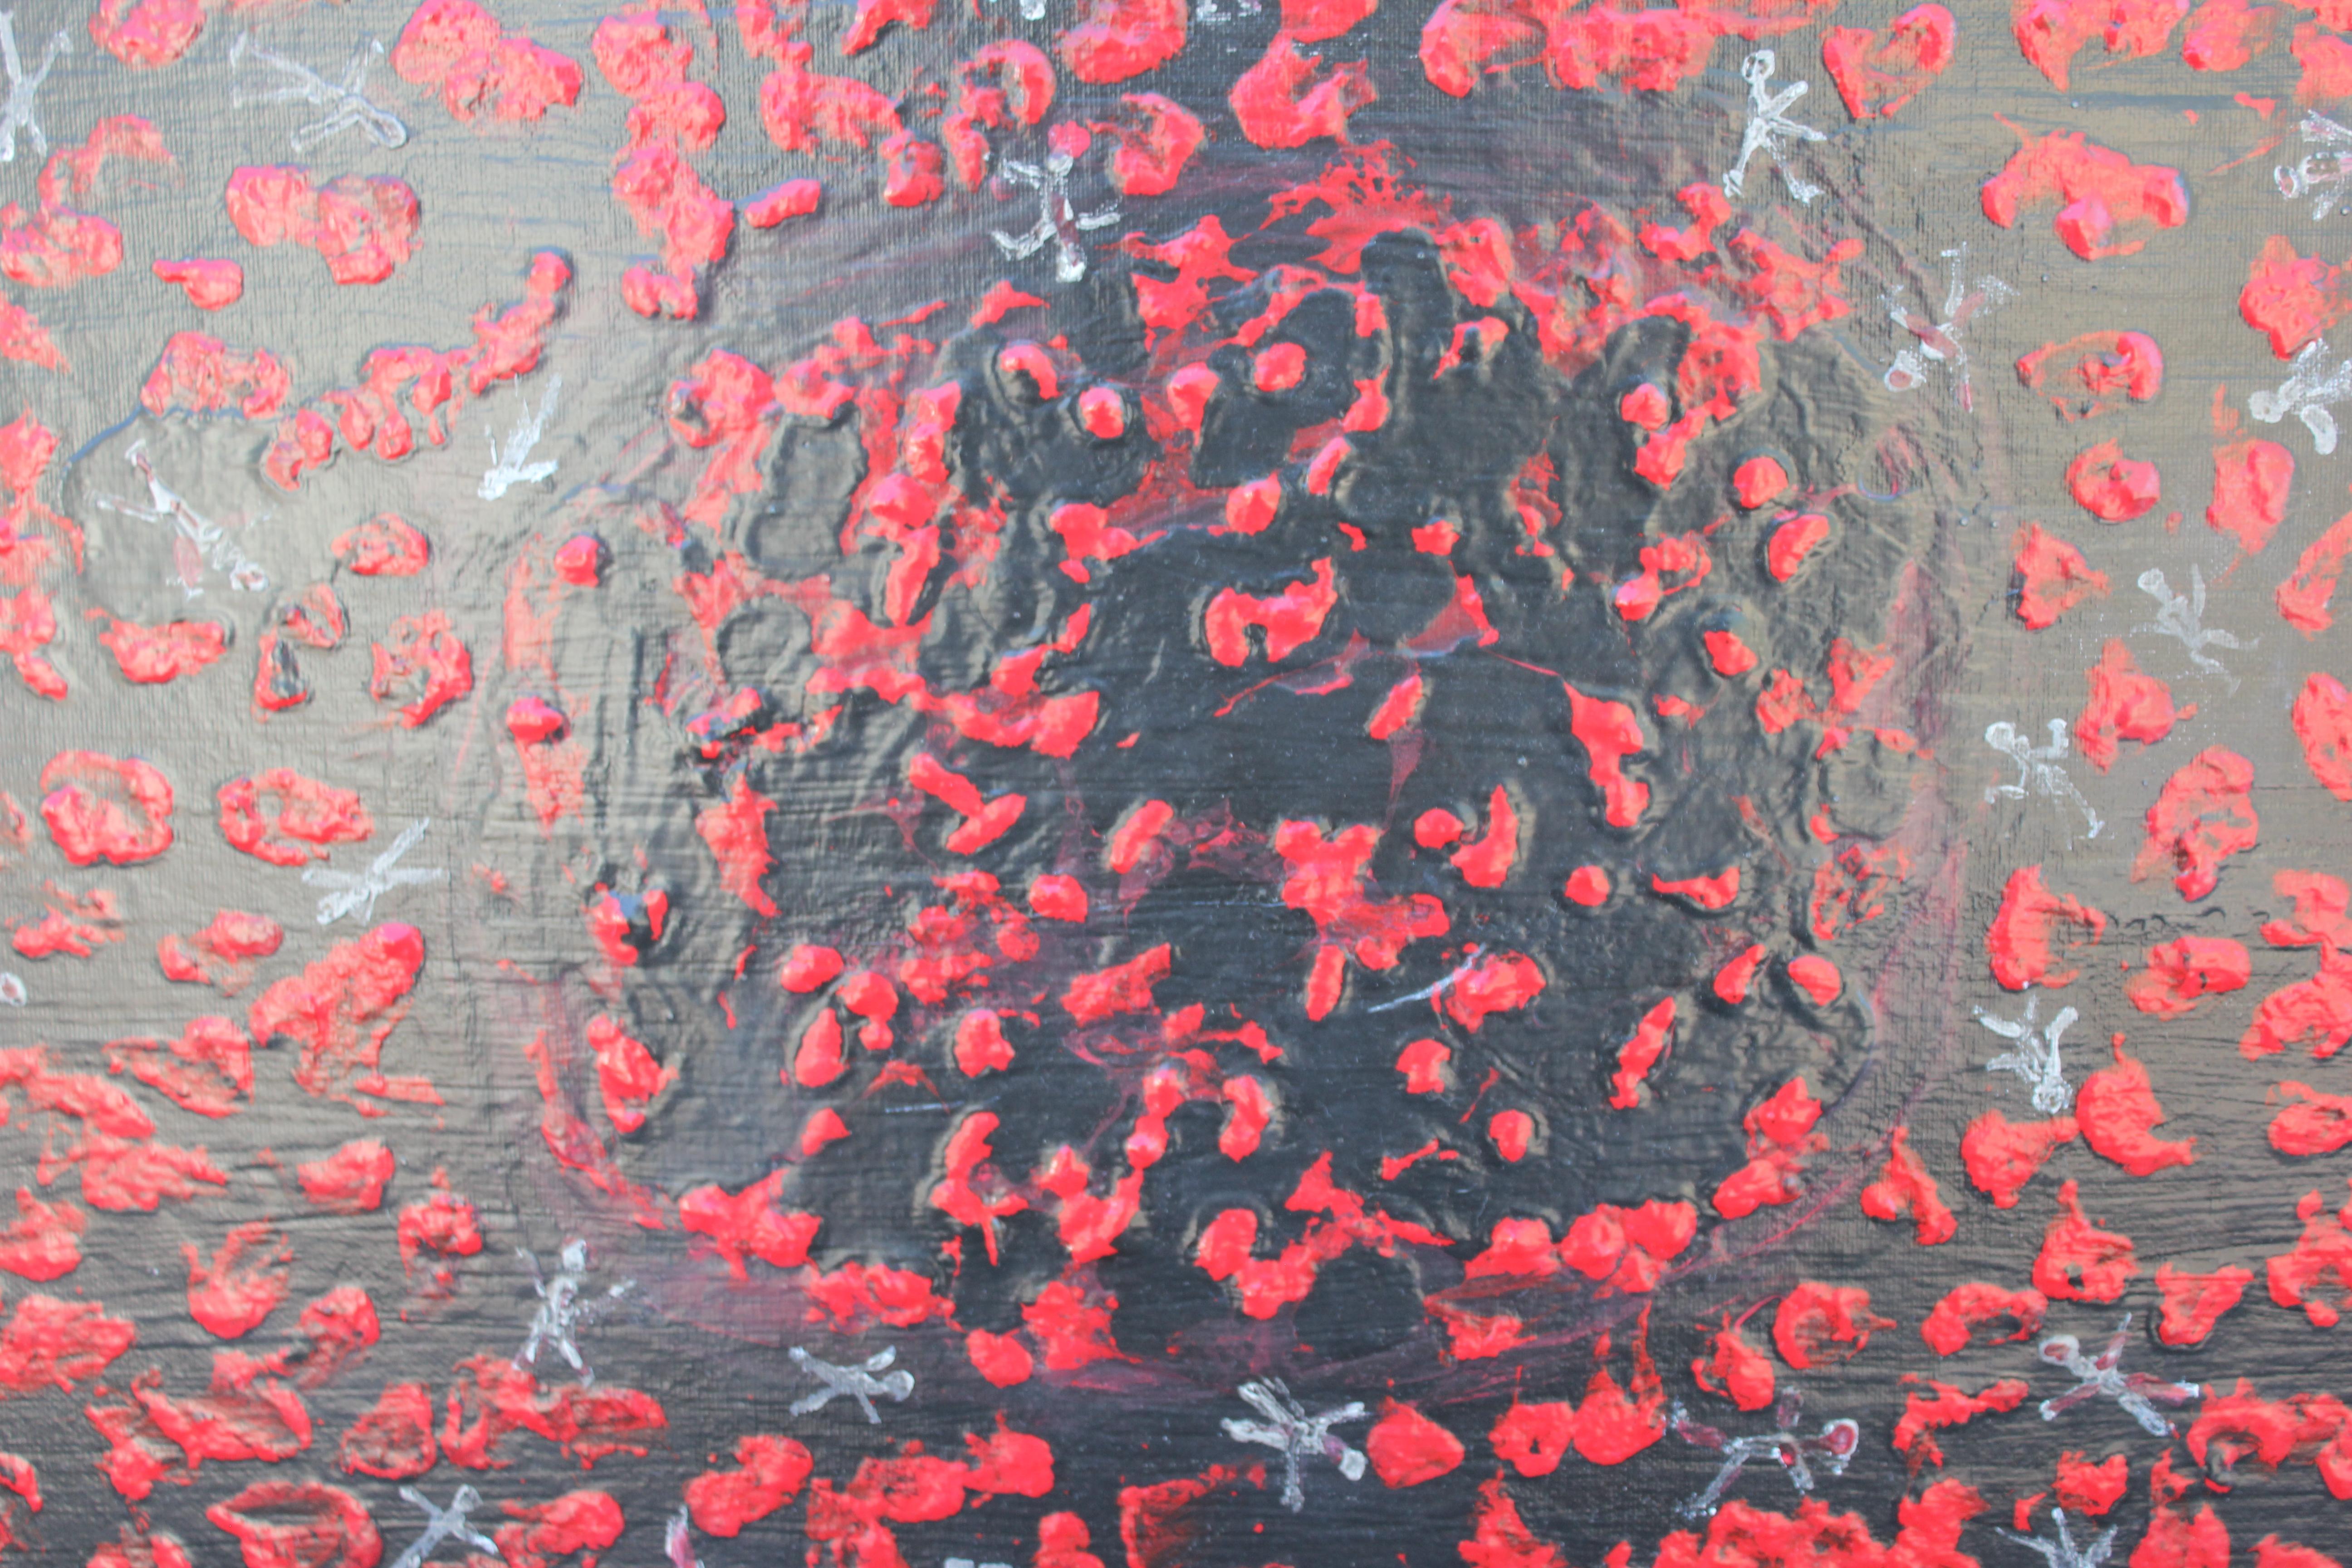 « Pollution », peinture abstraite rouge et noire - Painting de Paul Reeves